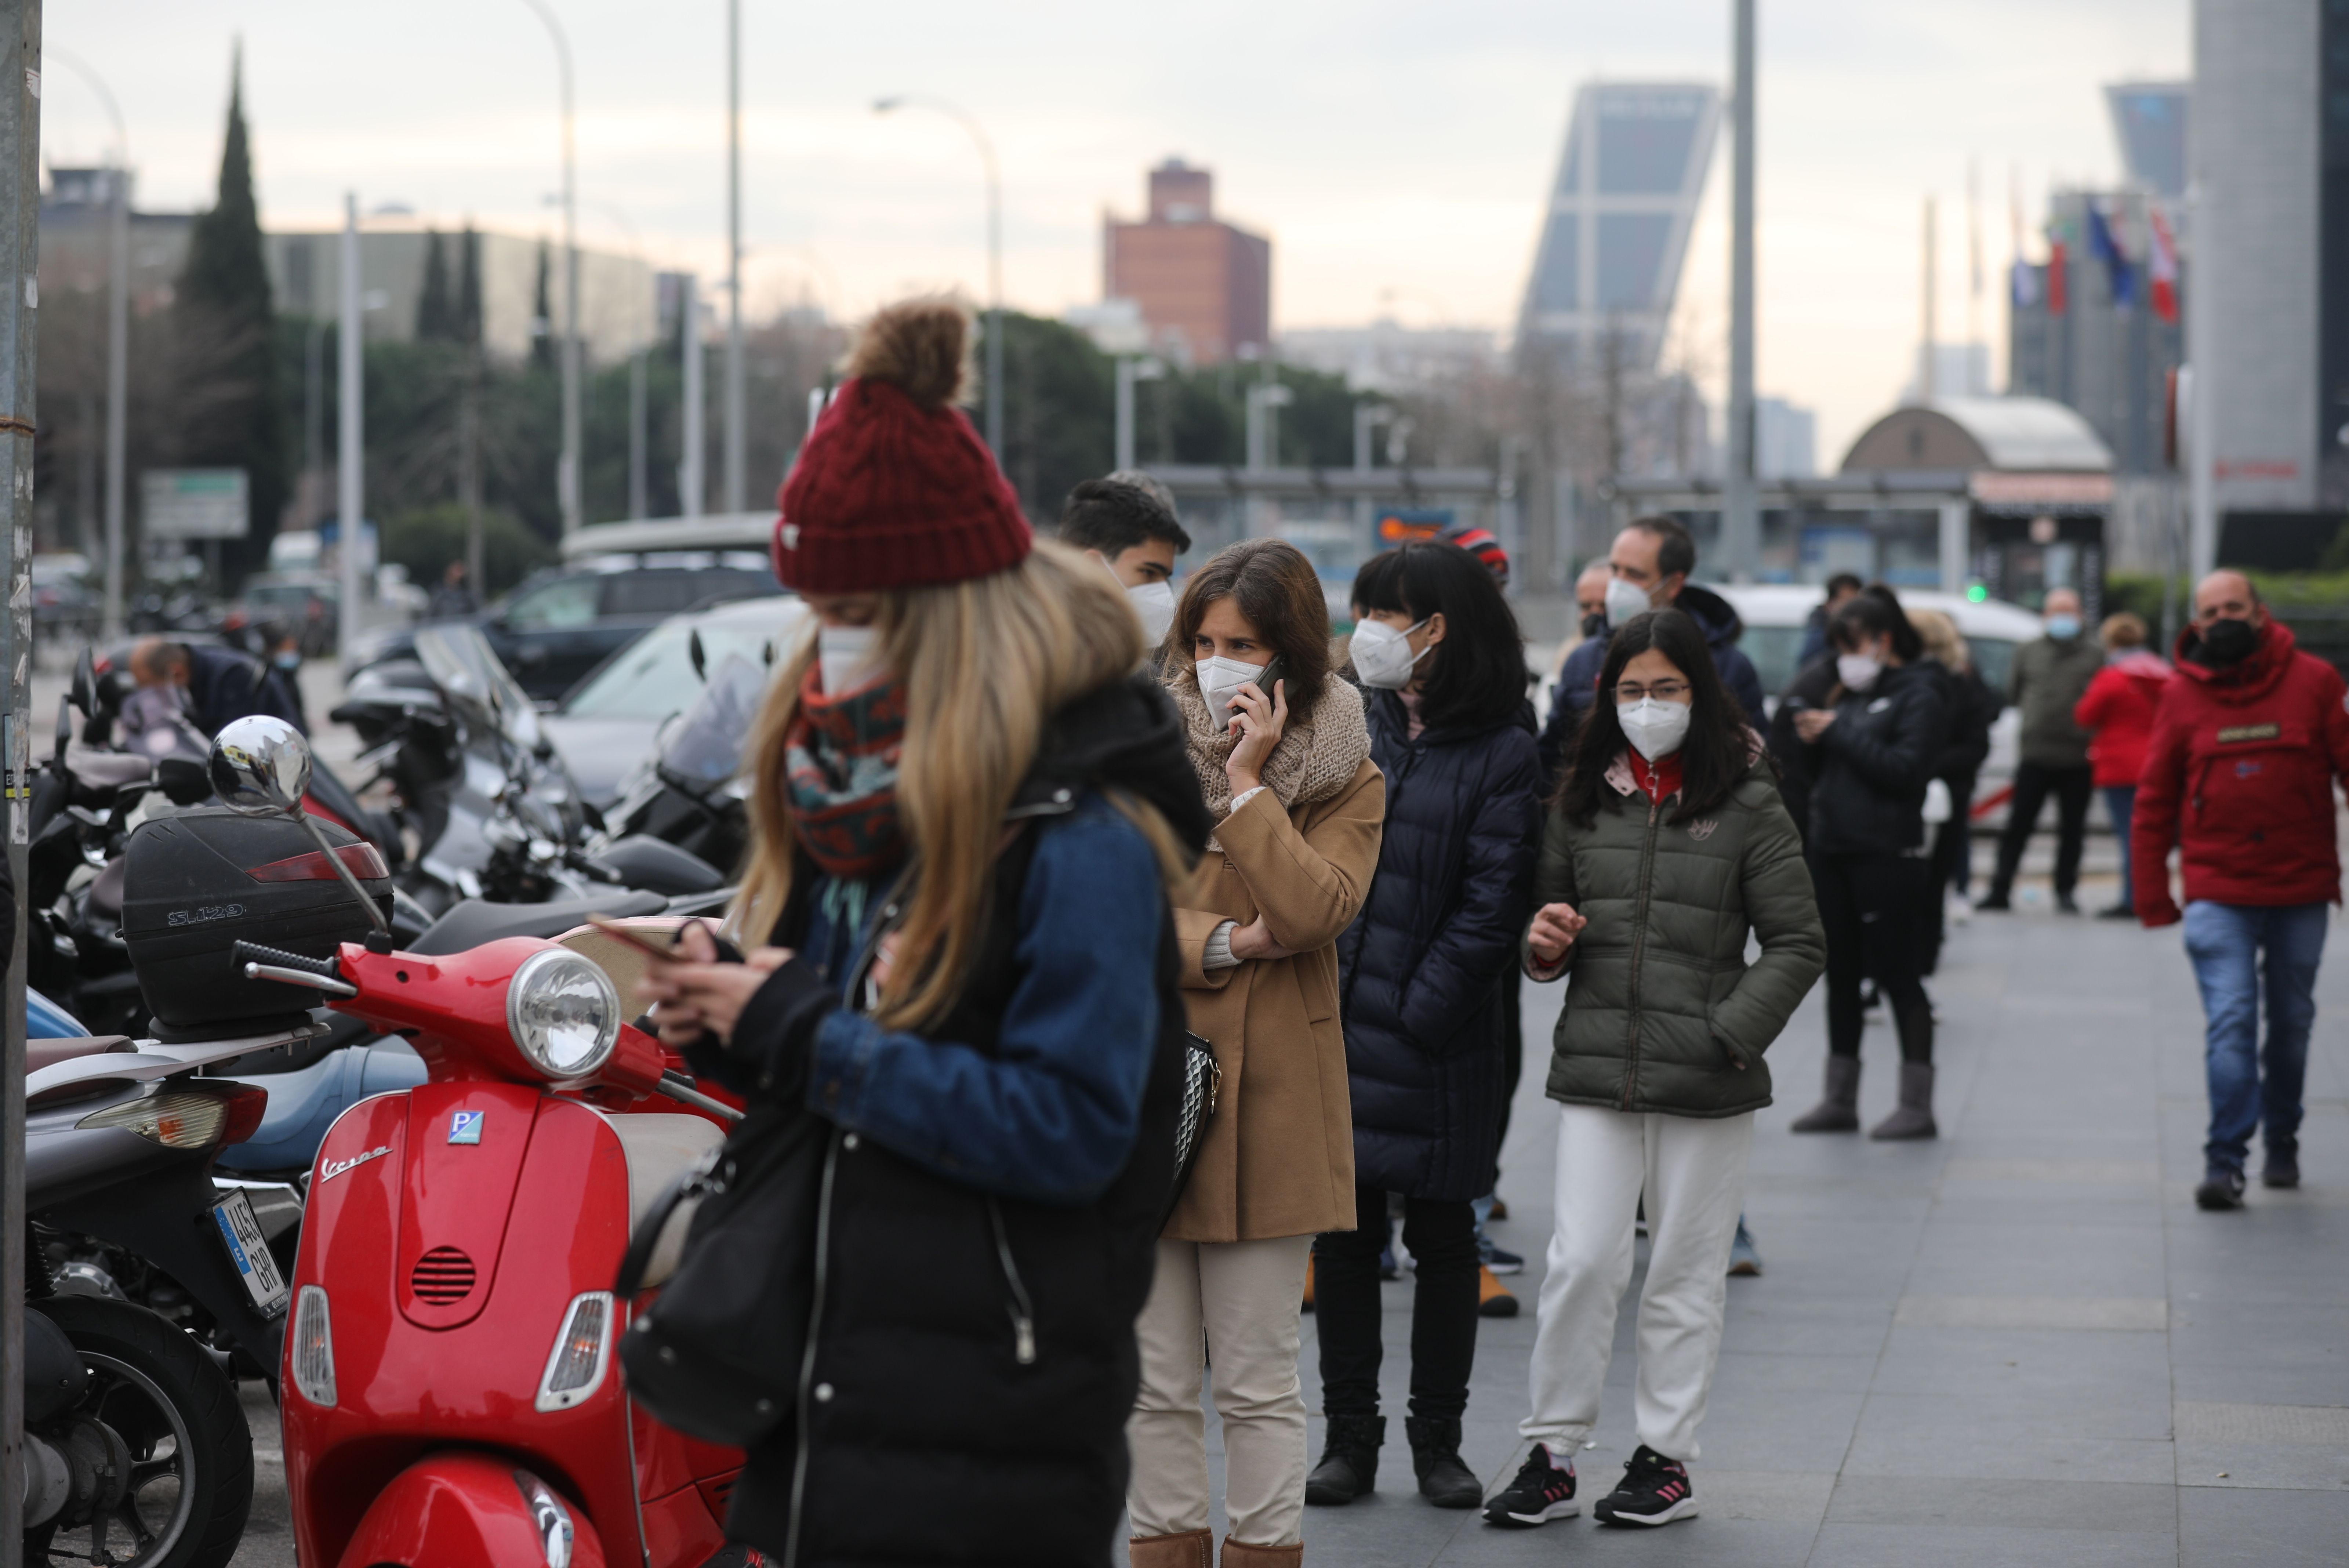 La exposición prolongada a la contaminación atmosférica puede aumentar el riesgo de Covid-19. Foto: Europa Press